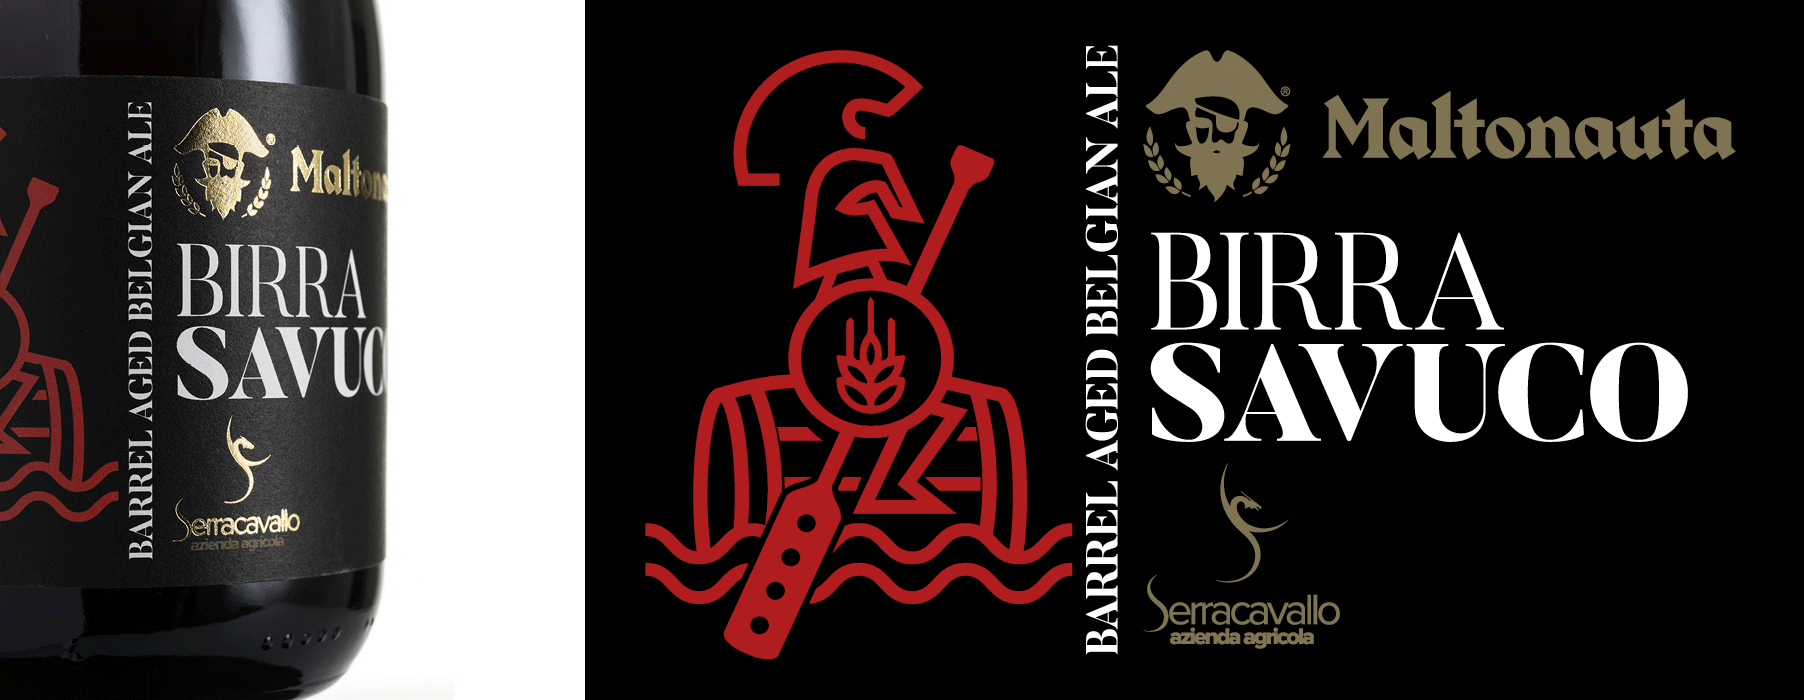 Il concetto del Maltonauta, di navigatore tra i fiotti della birra, è racchiuso non soltanto nel logotipo aziendale che ritrae un pirata barbuto, ma anche nel visual minimal ed elegante della Birra Savuco, la birra che matura nelle botti del vino Savuco dell’azienda agricola Serracavallo.